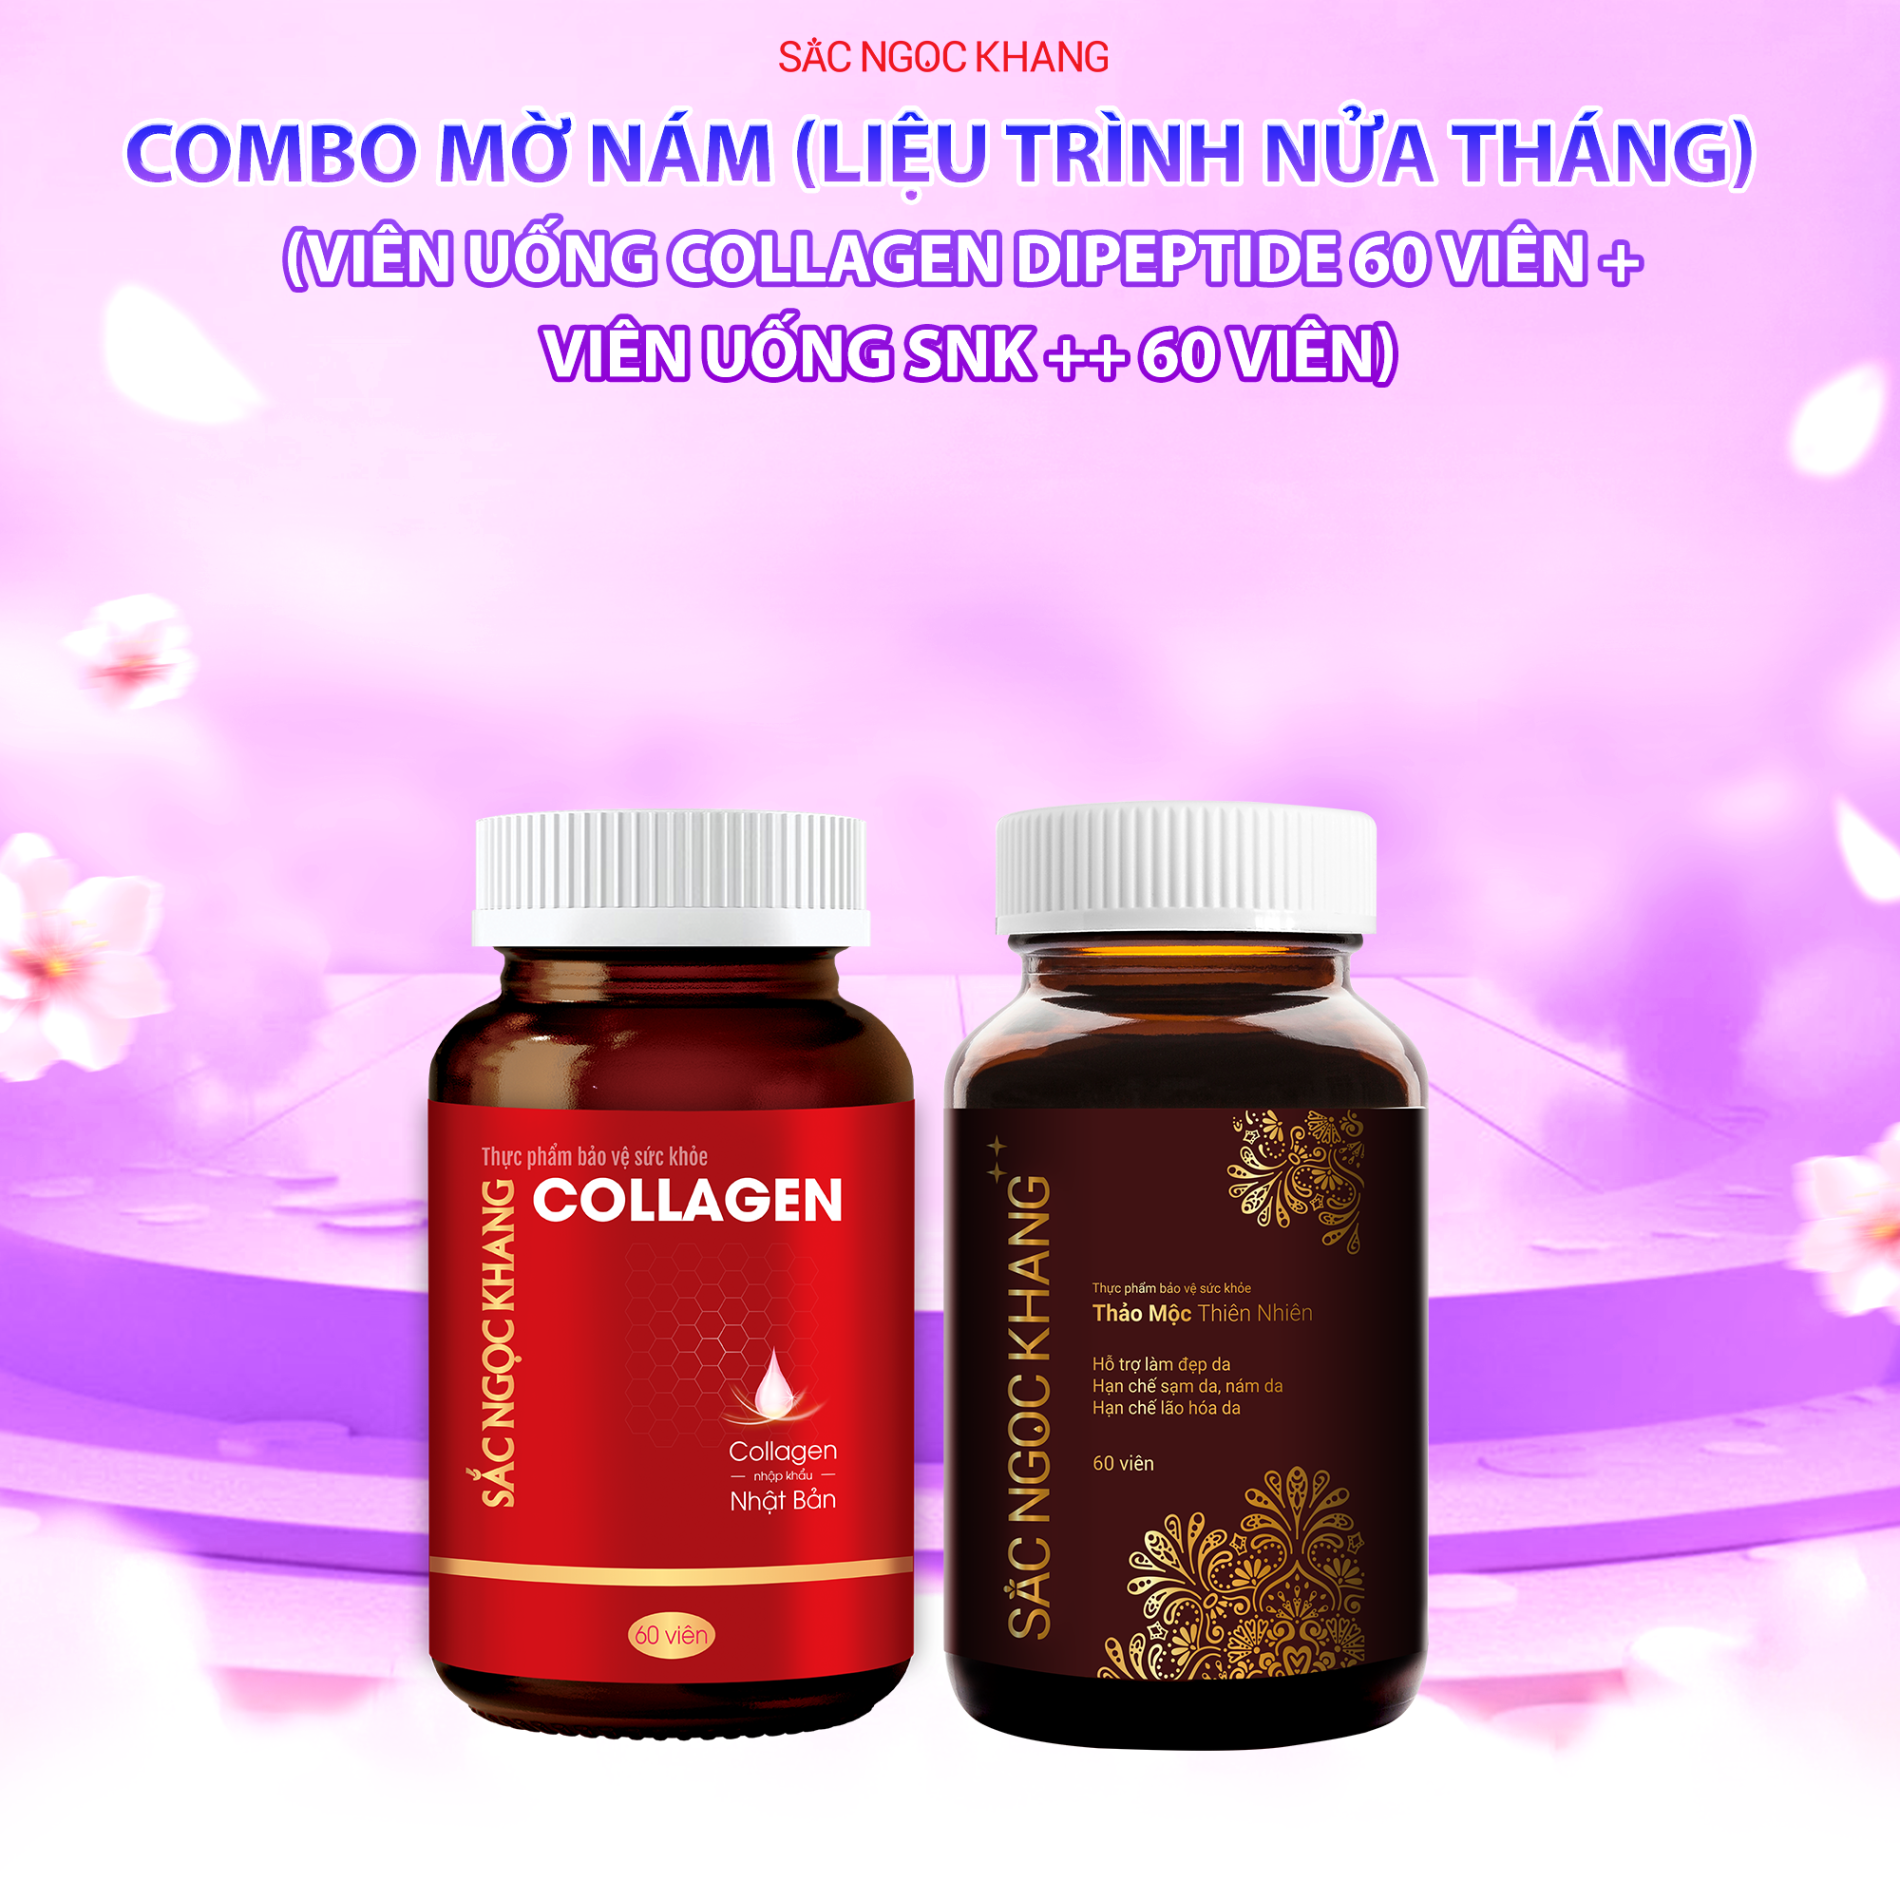 COMBO MỜ NÁM (LIỆU TRÌNH NỬA THÁNG): Viên Uống Collagen Dipeptide [60 Viên] + Viên Uống SNK ++ [60 Viên]